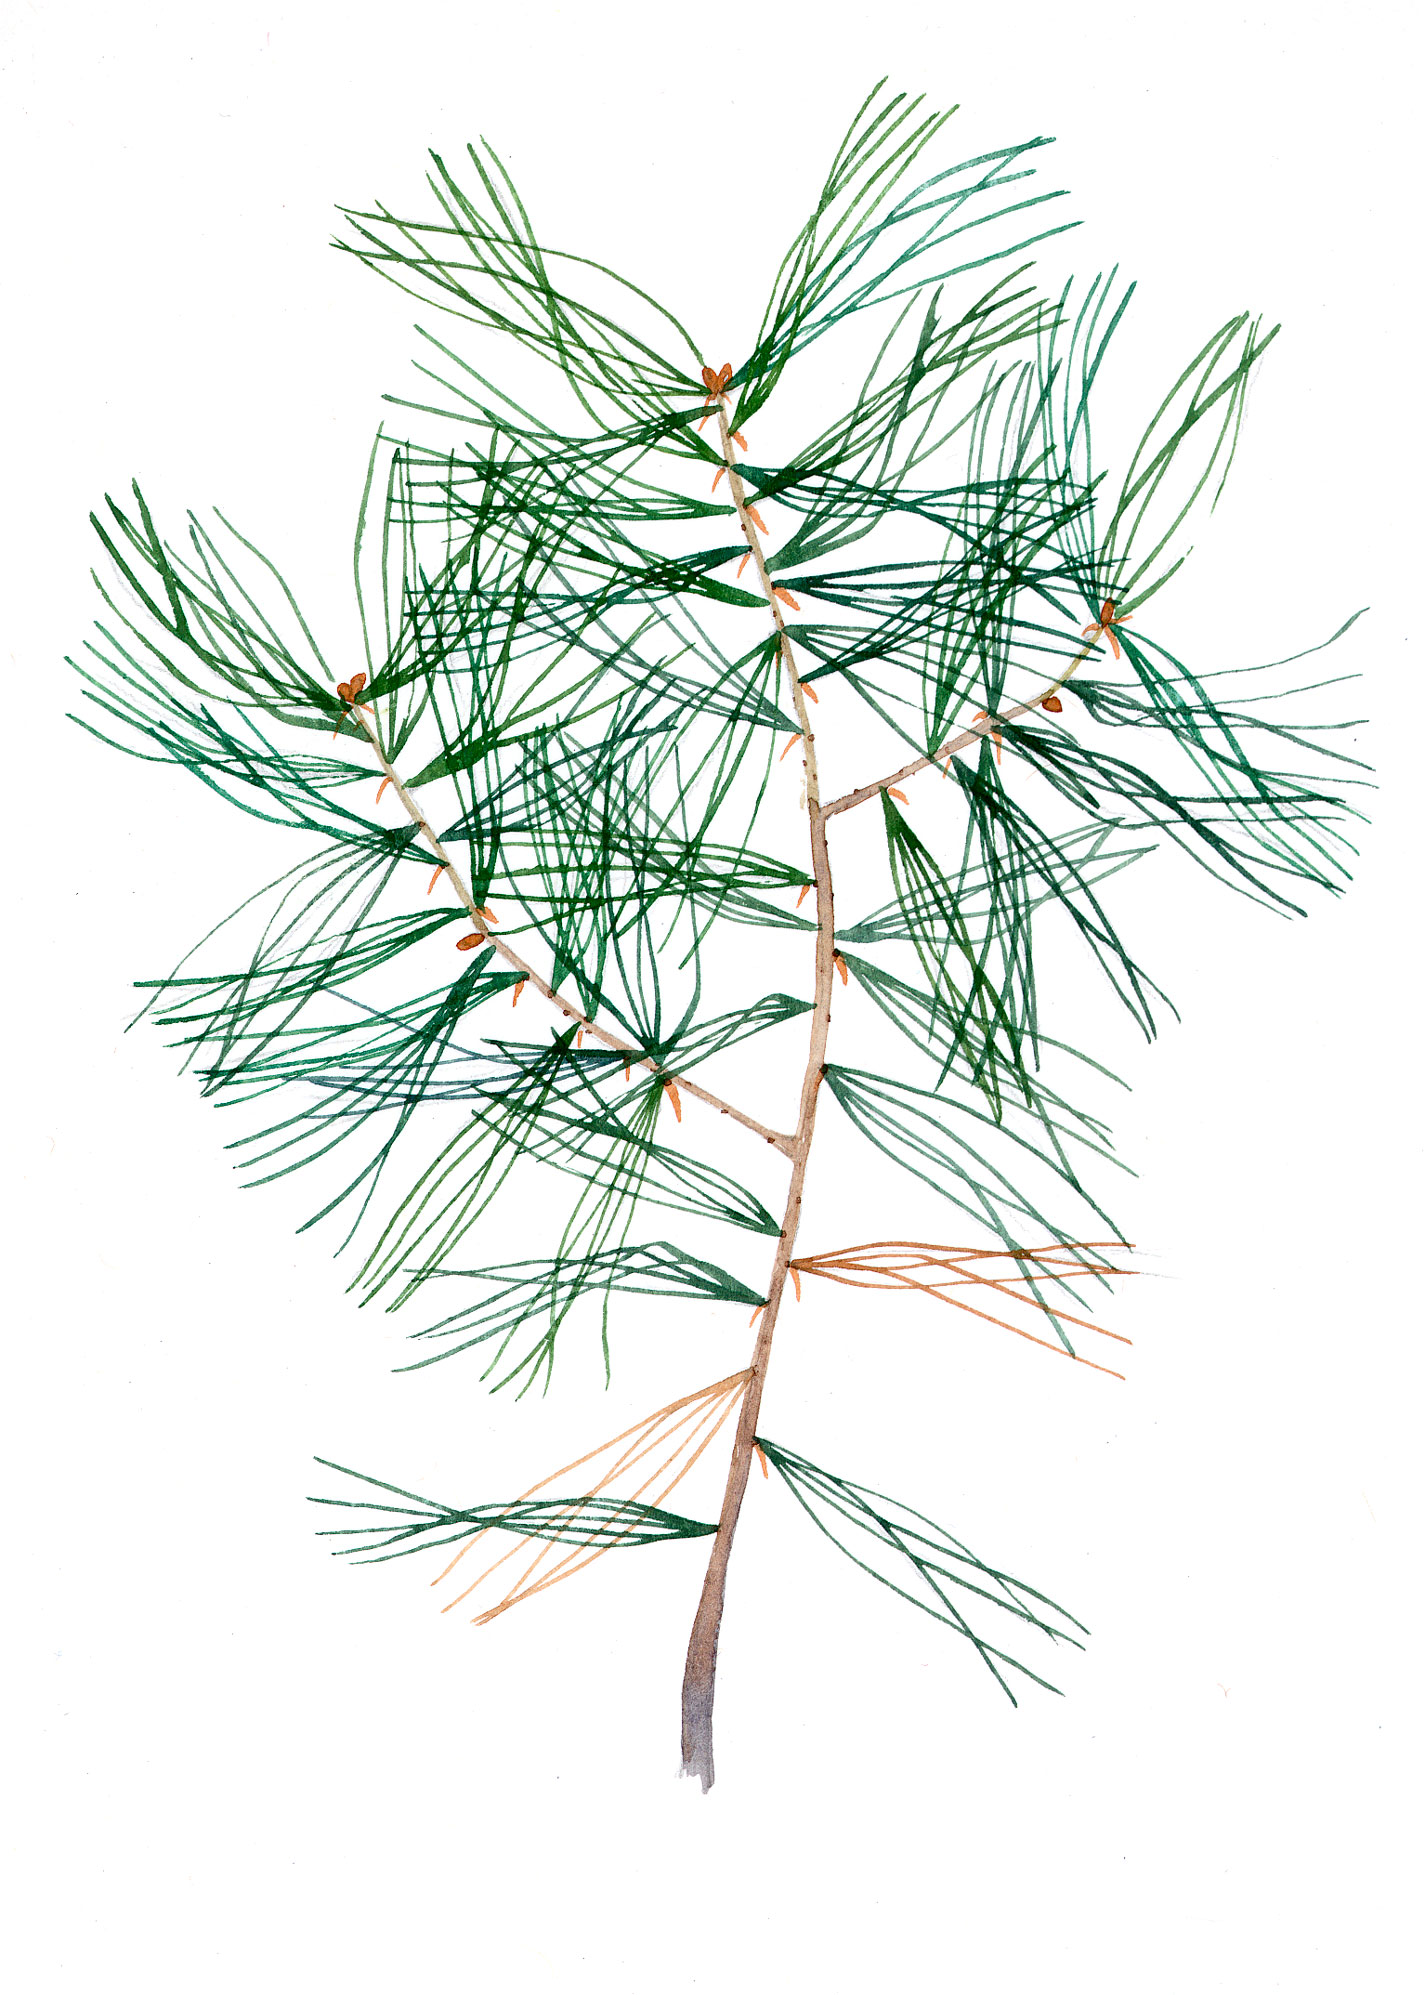 White Pine seedling (Pinus strobus)